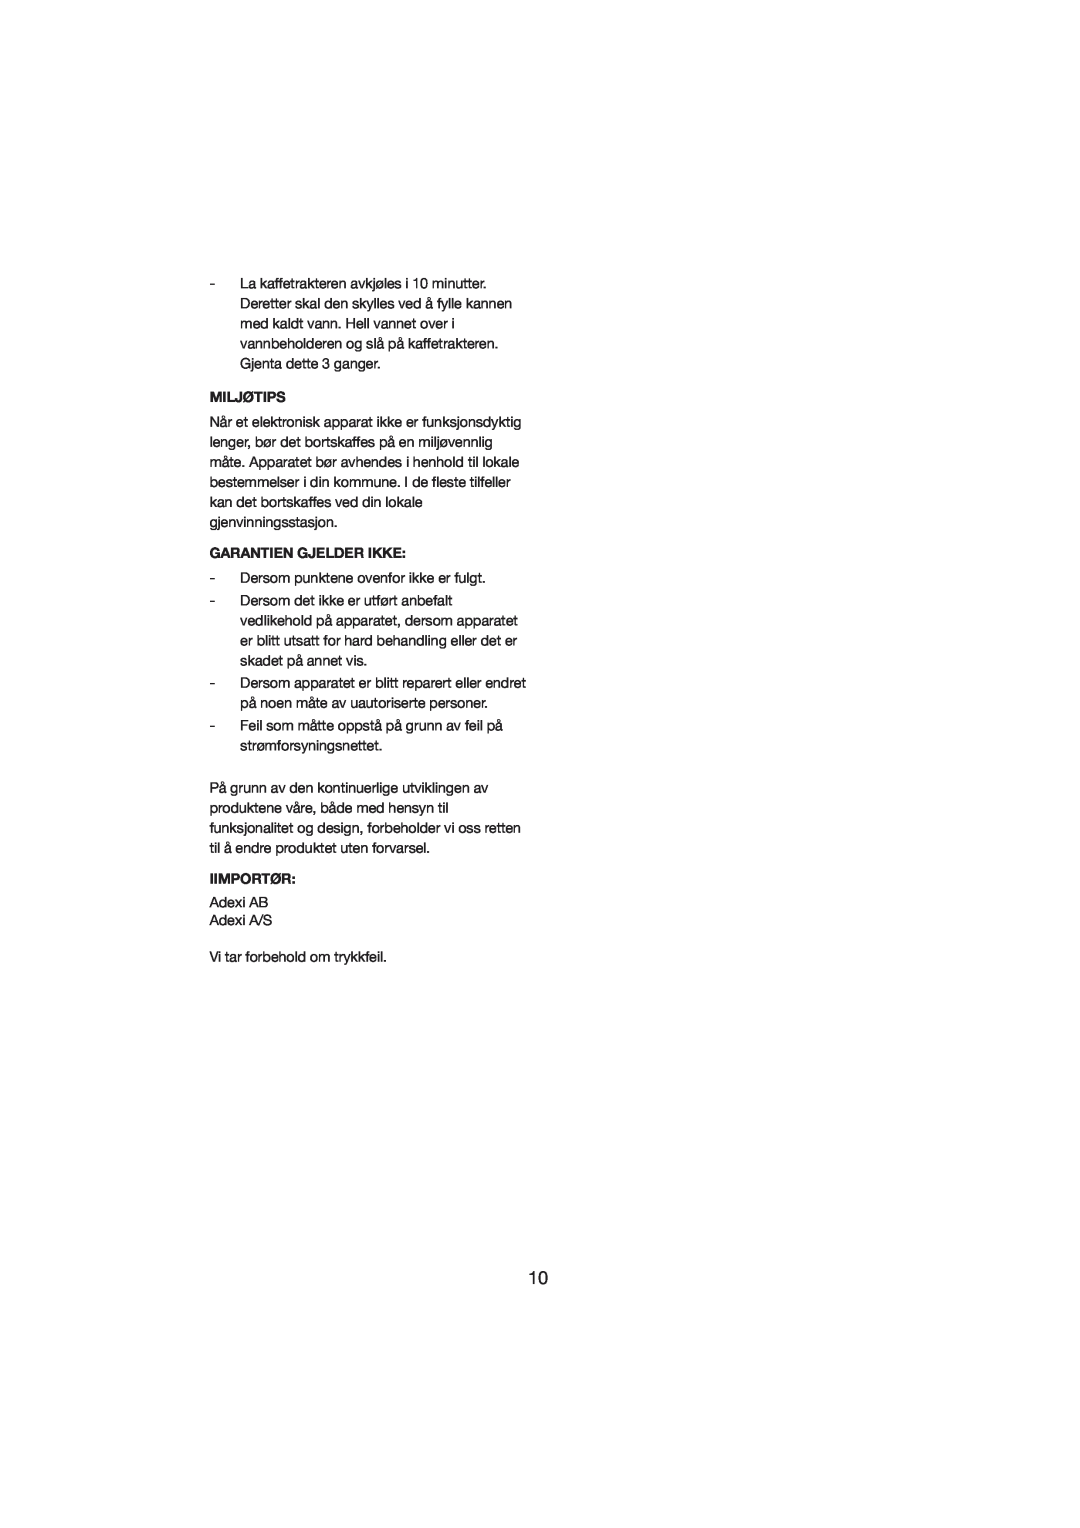 Melissa 245-022 manual Miljøtips, Garantien Gjelder Ikke, Iimportør 